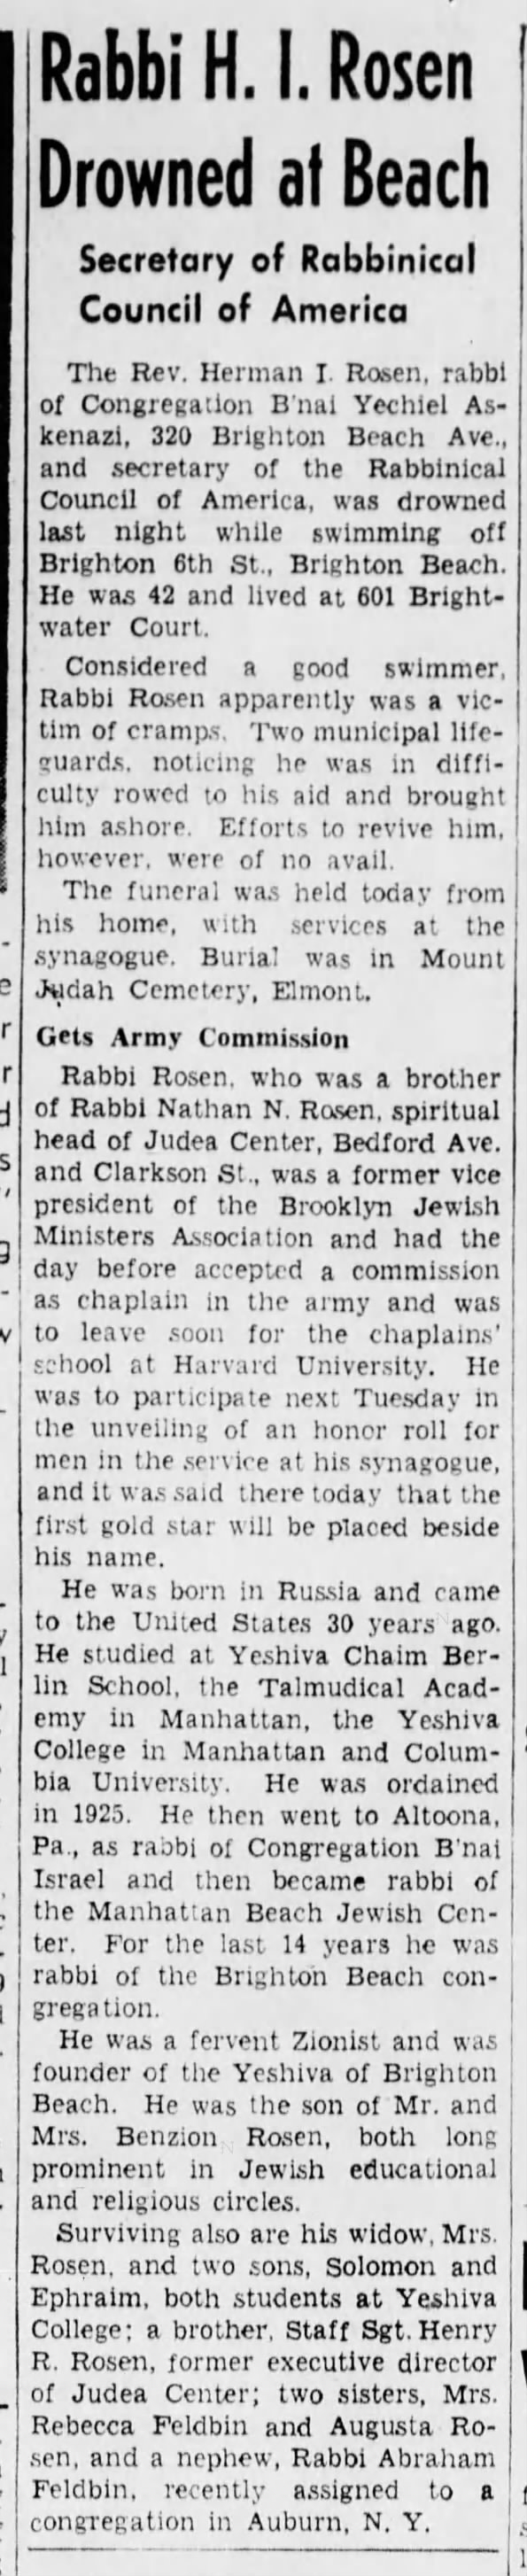 Rabbi Abraham Feldbin mentioned in obit for Rabbi H.I. Rosen 1943